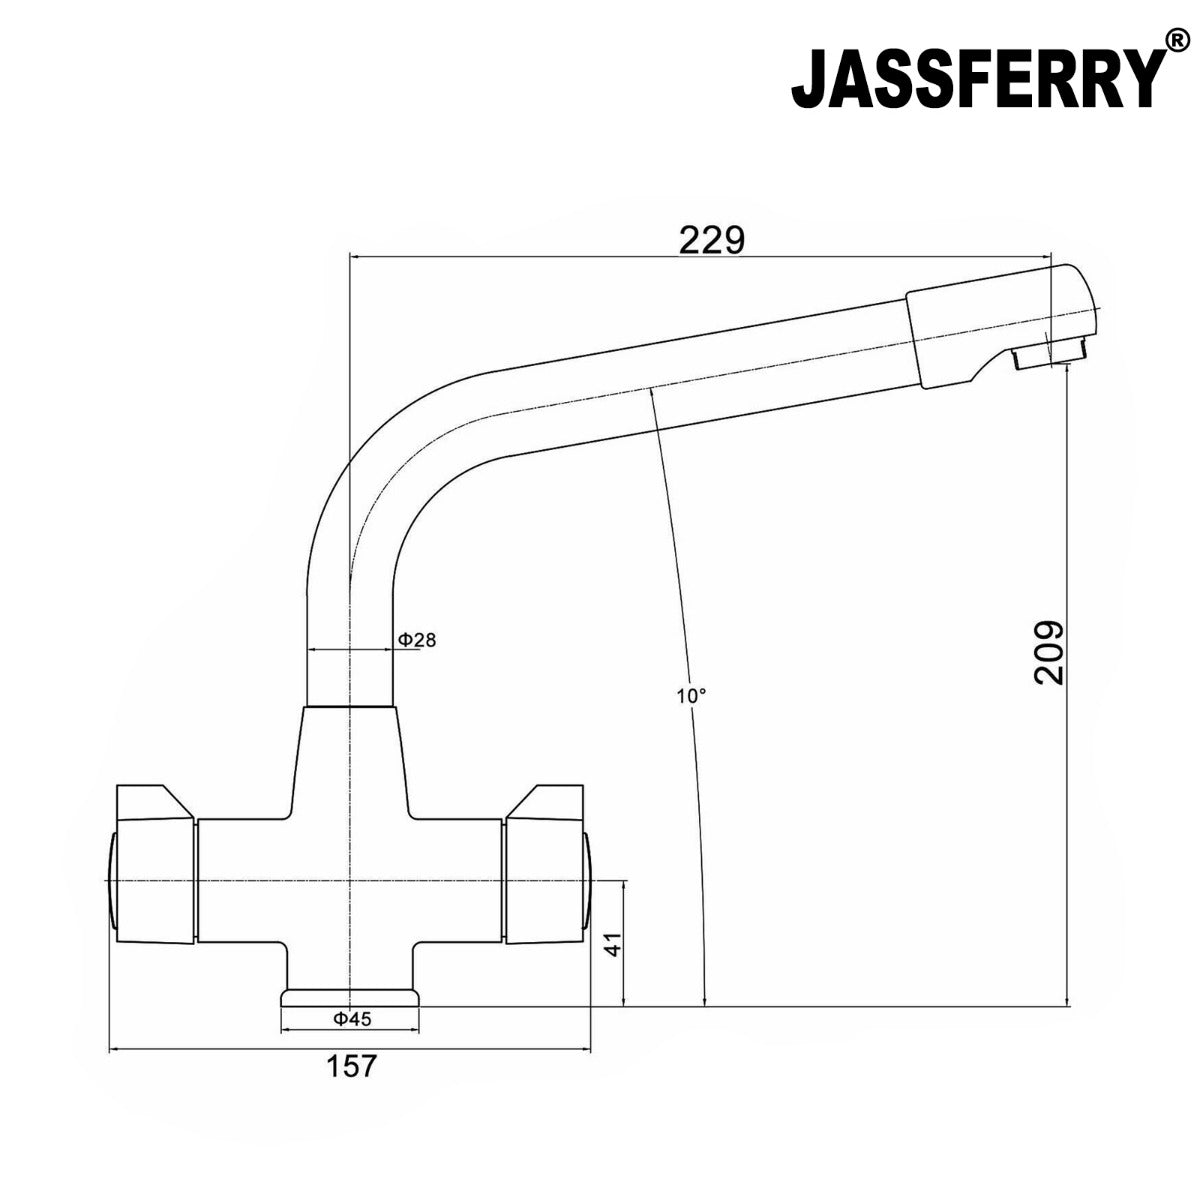 JassferryJASSFERRY New Kitchen Sink Tap Mixer Dual Flow Quarter Turn Dial Monobloc BrassKitchen taps